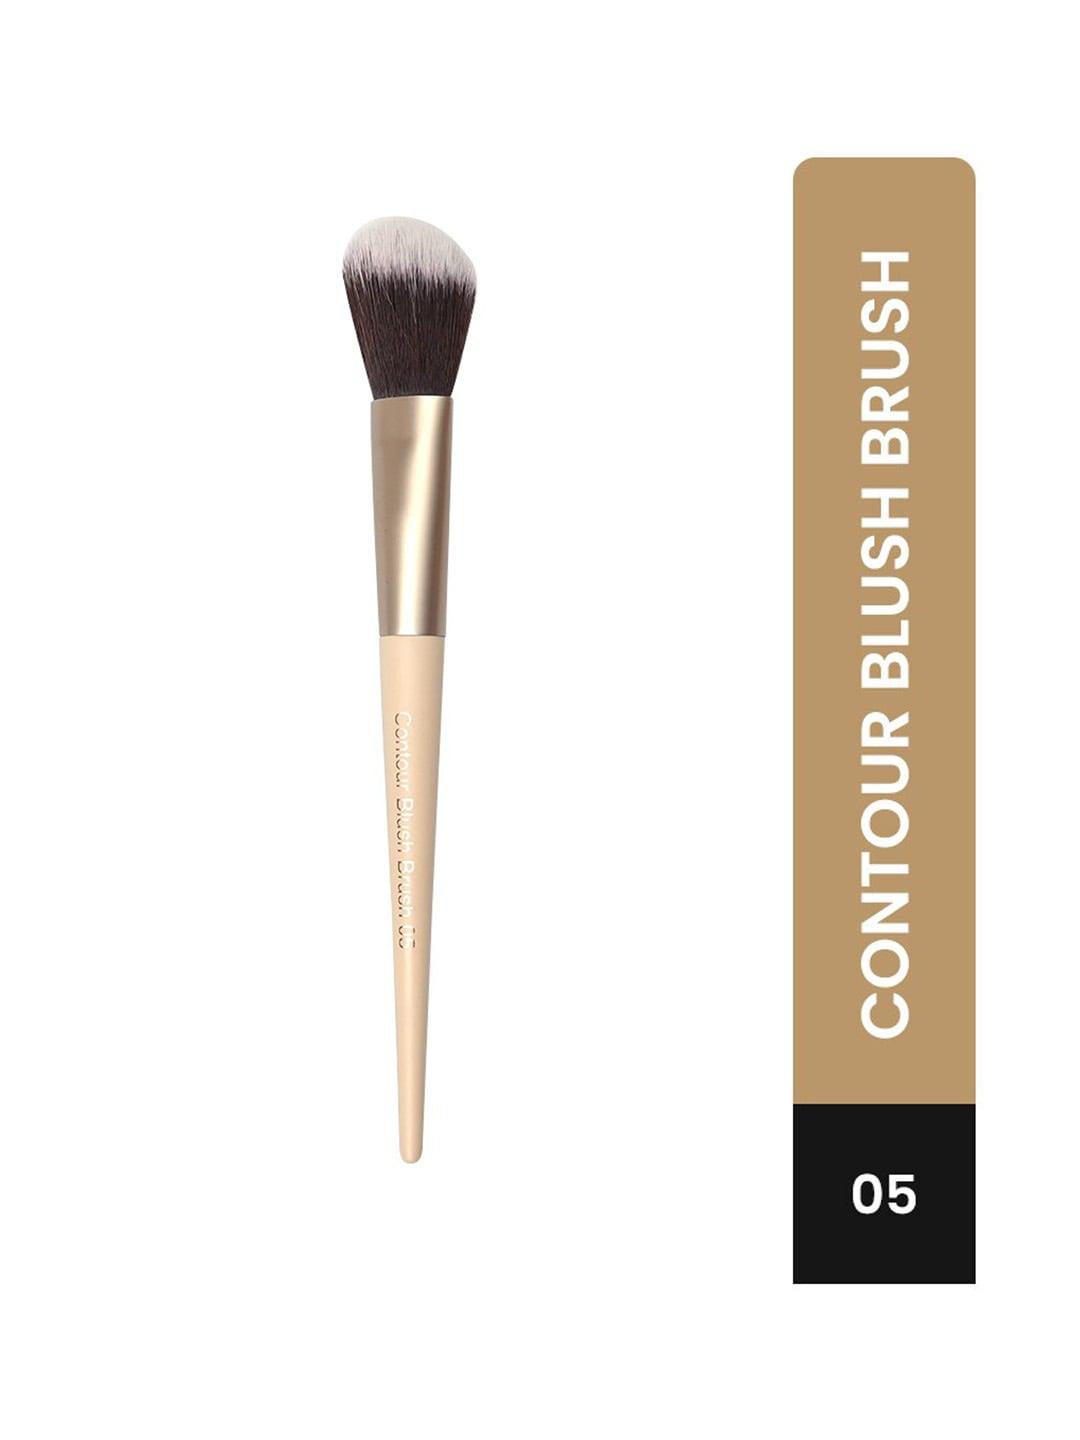 milagro beauty contour blush brush 05 - beige